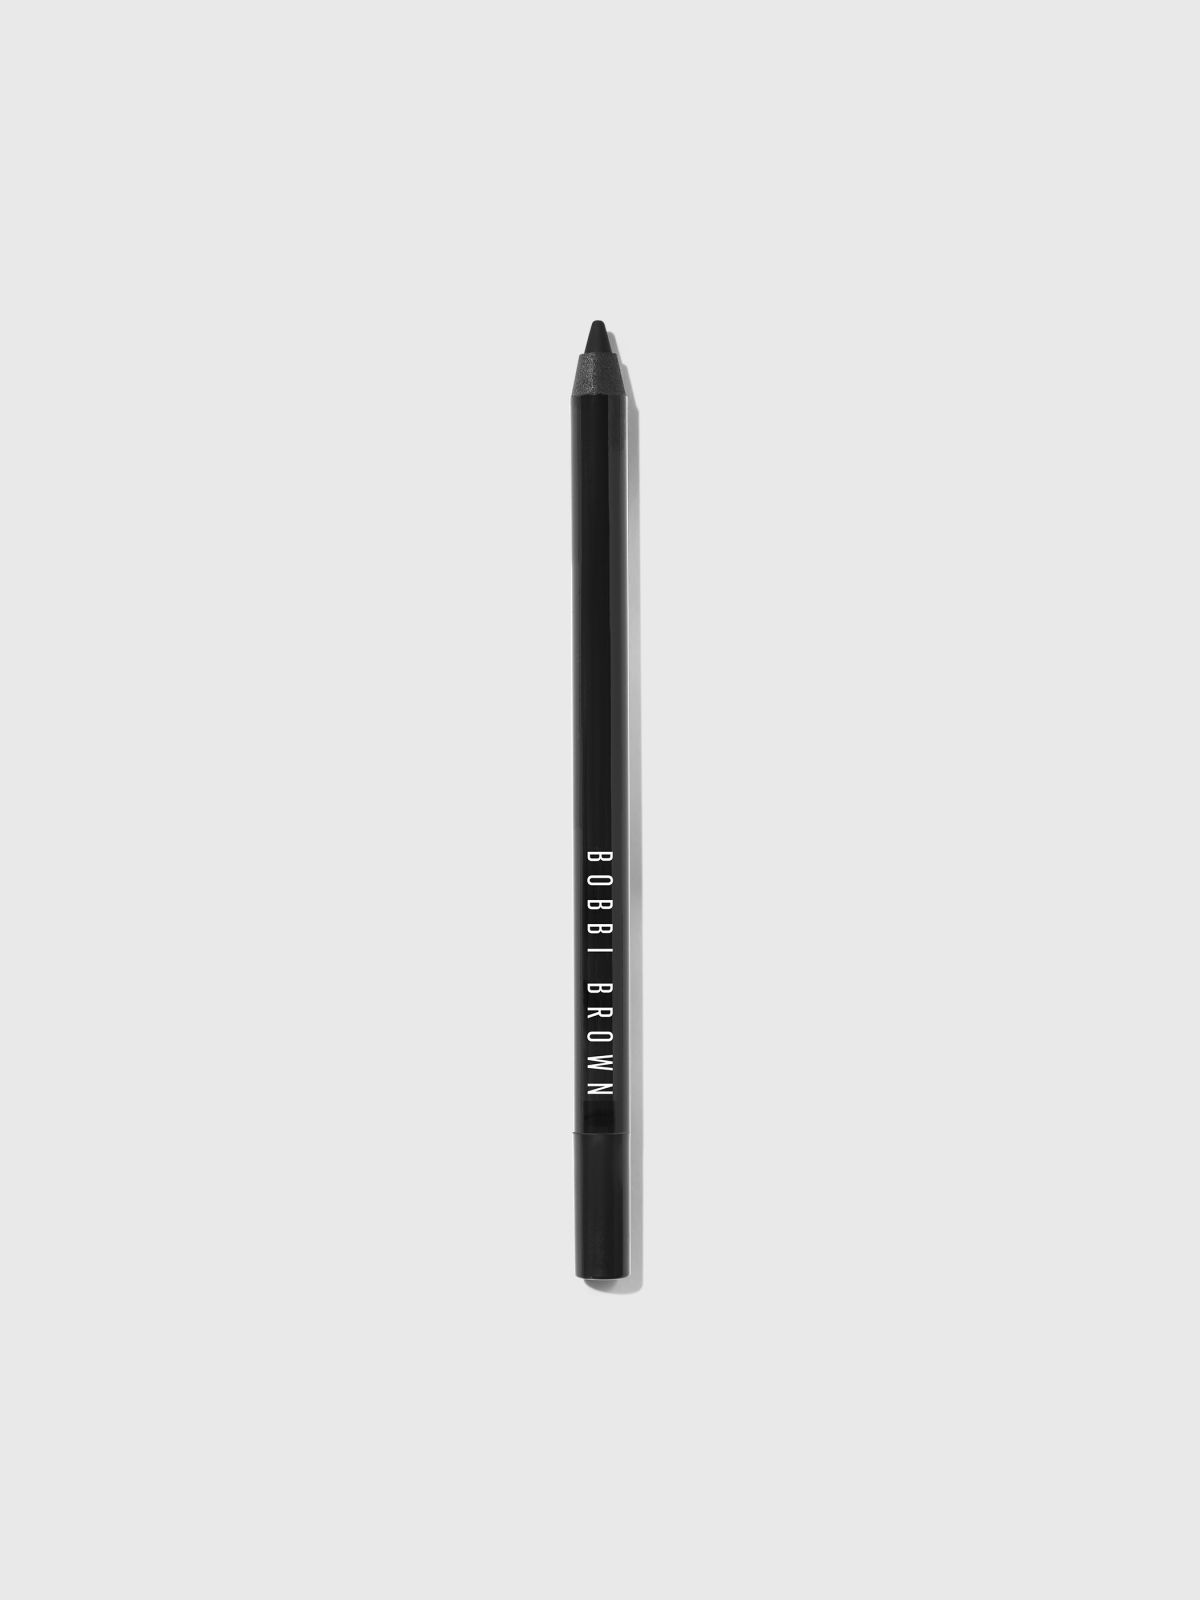  עיפרון עיניים עמיד Long-Wear Eye Pencil של BOBBI BROWN